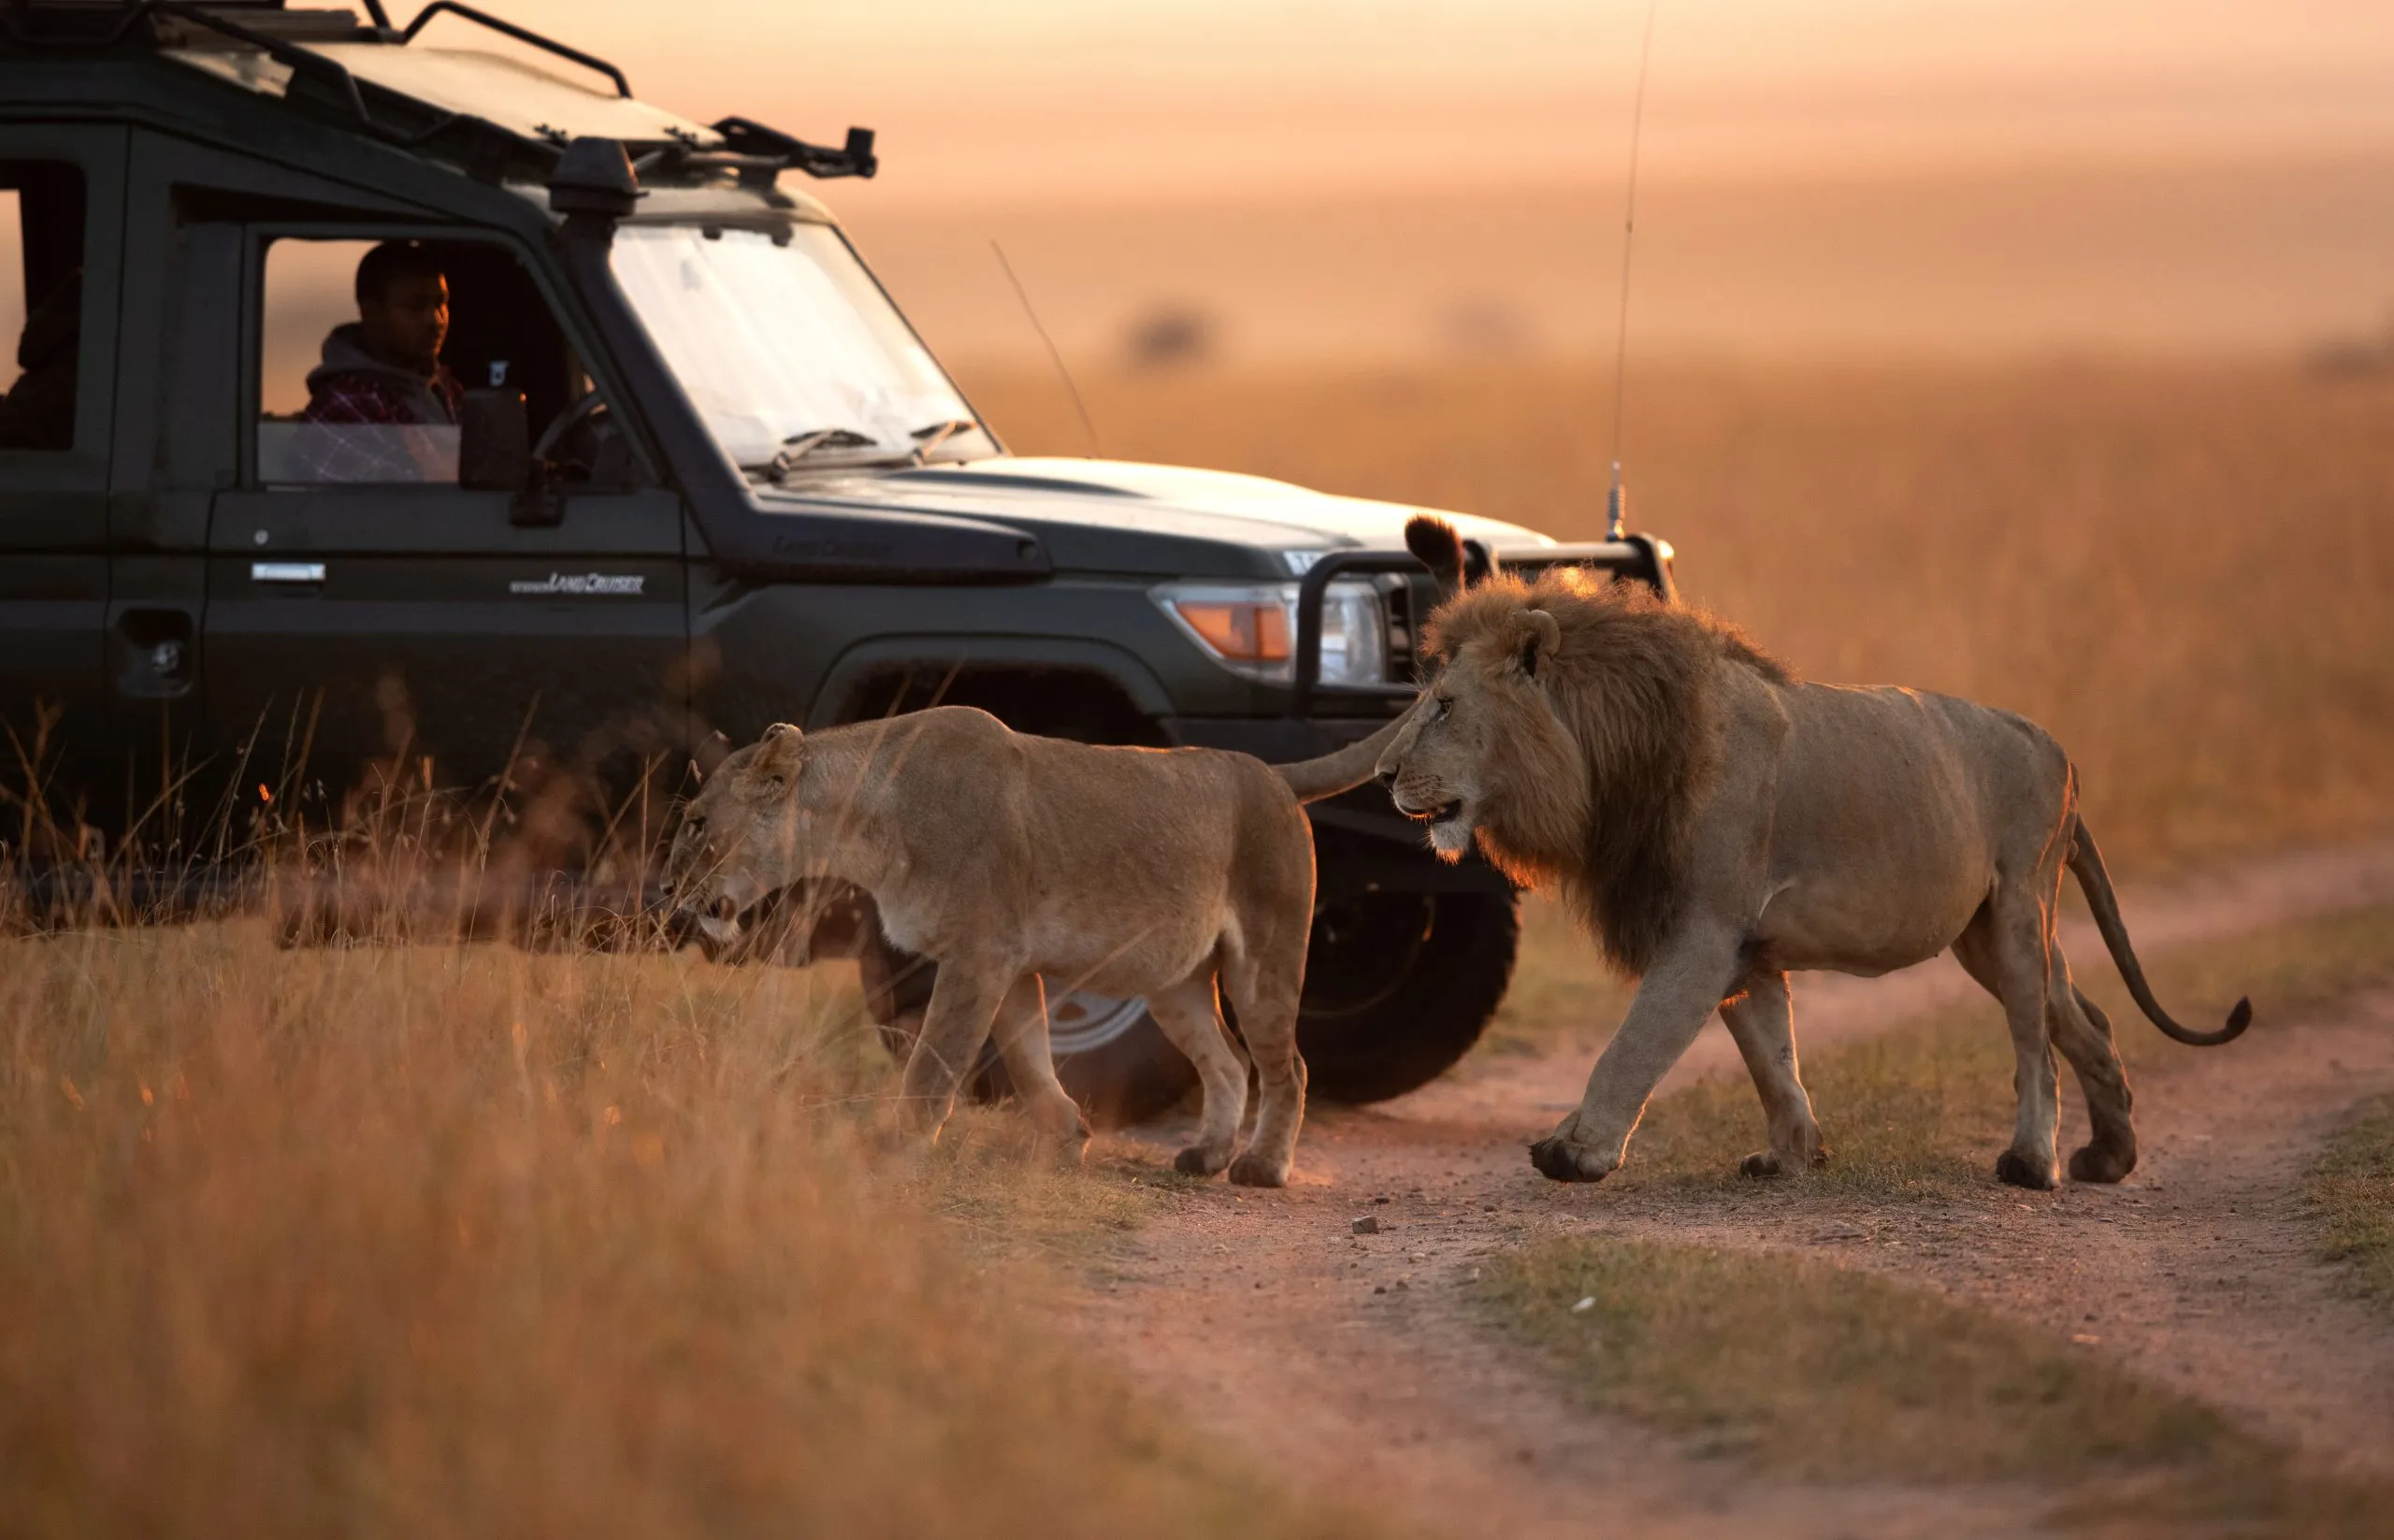 MASAI MARA, KEYNA- SEPTEMBER 06: Toerist kijkt naar een leeuwenpaar dat in beweging is in het grasland van het Masai Mara National Reserve op 06 september, 2022.